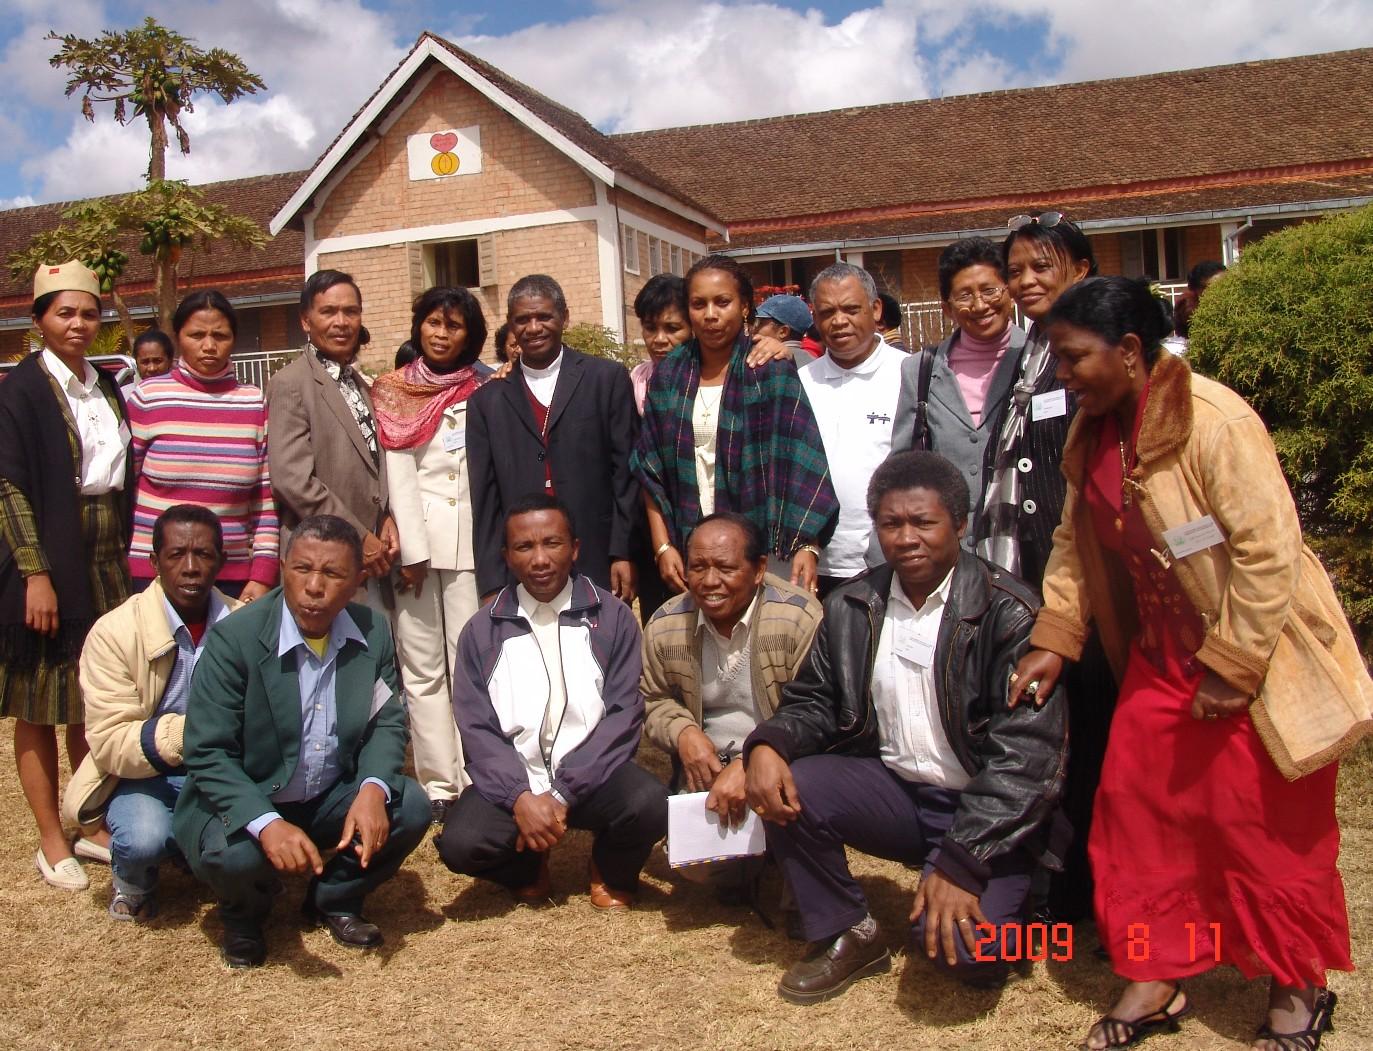 Groupes diocésains avec monseigneur Désiré   2 2008